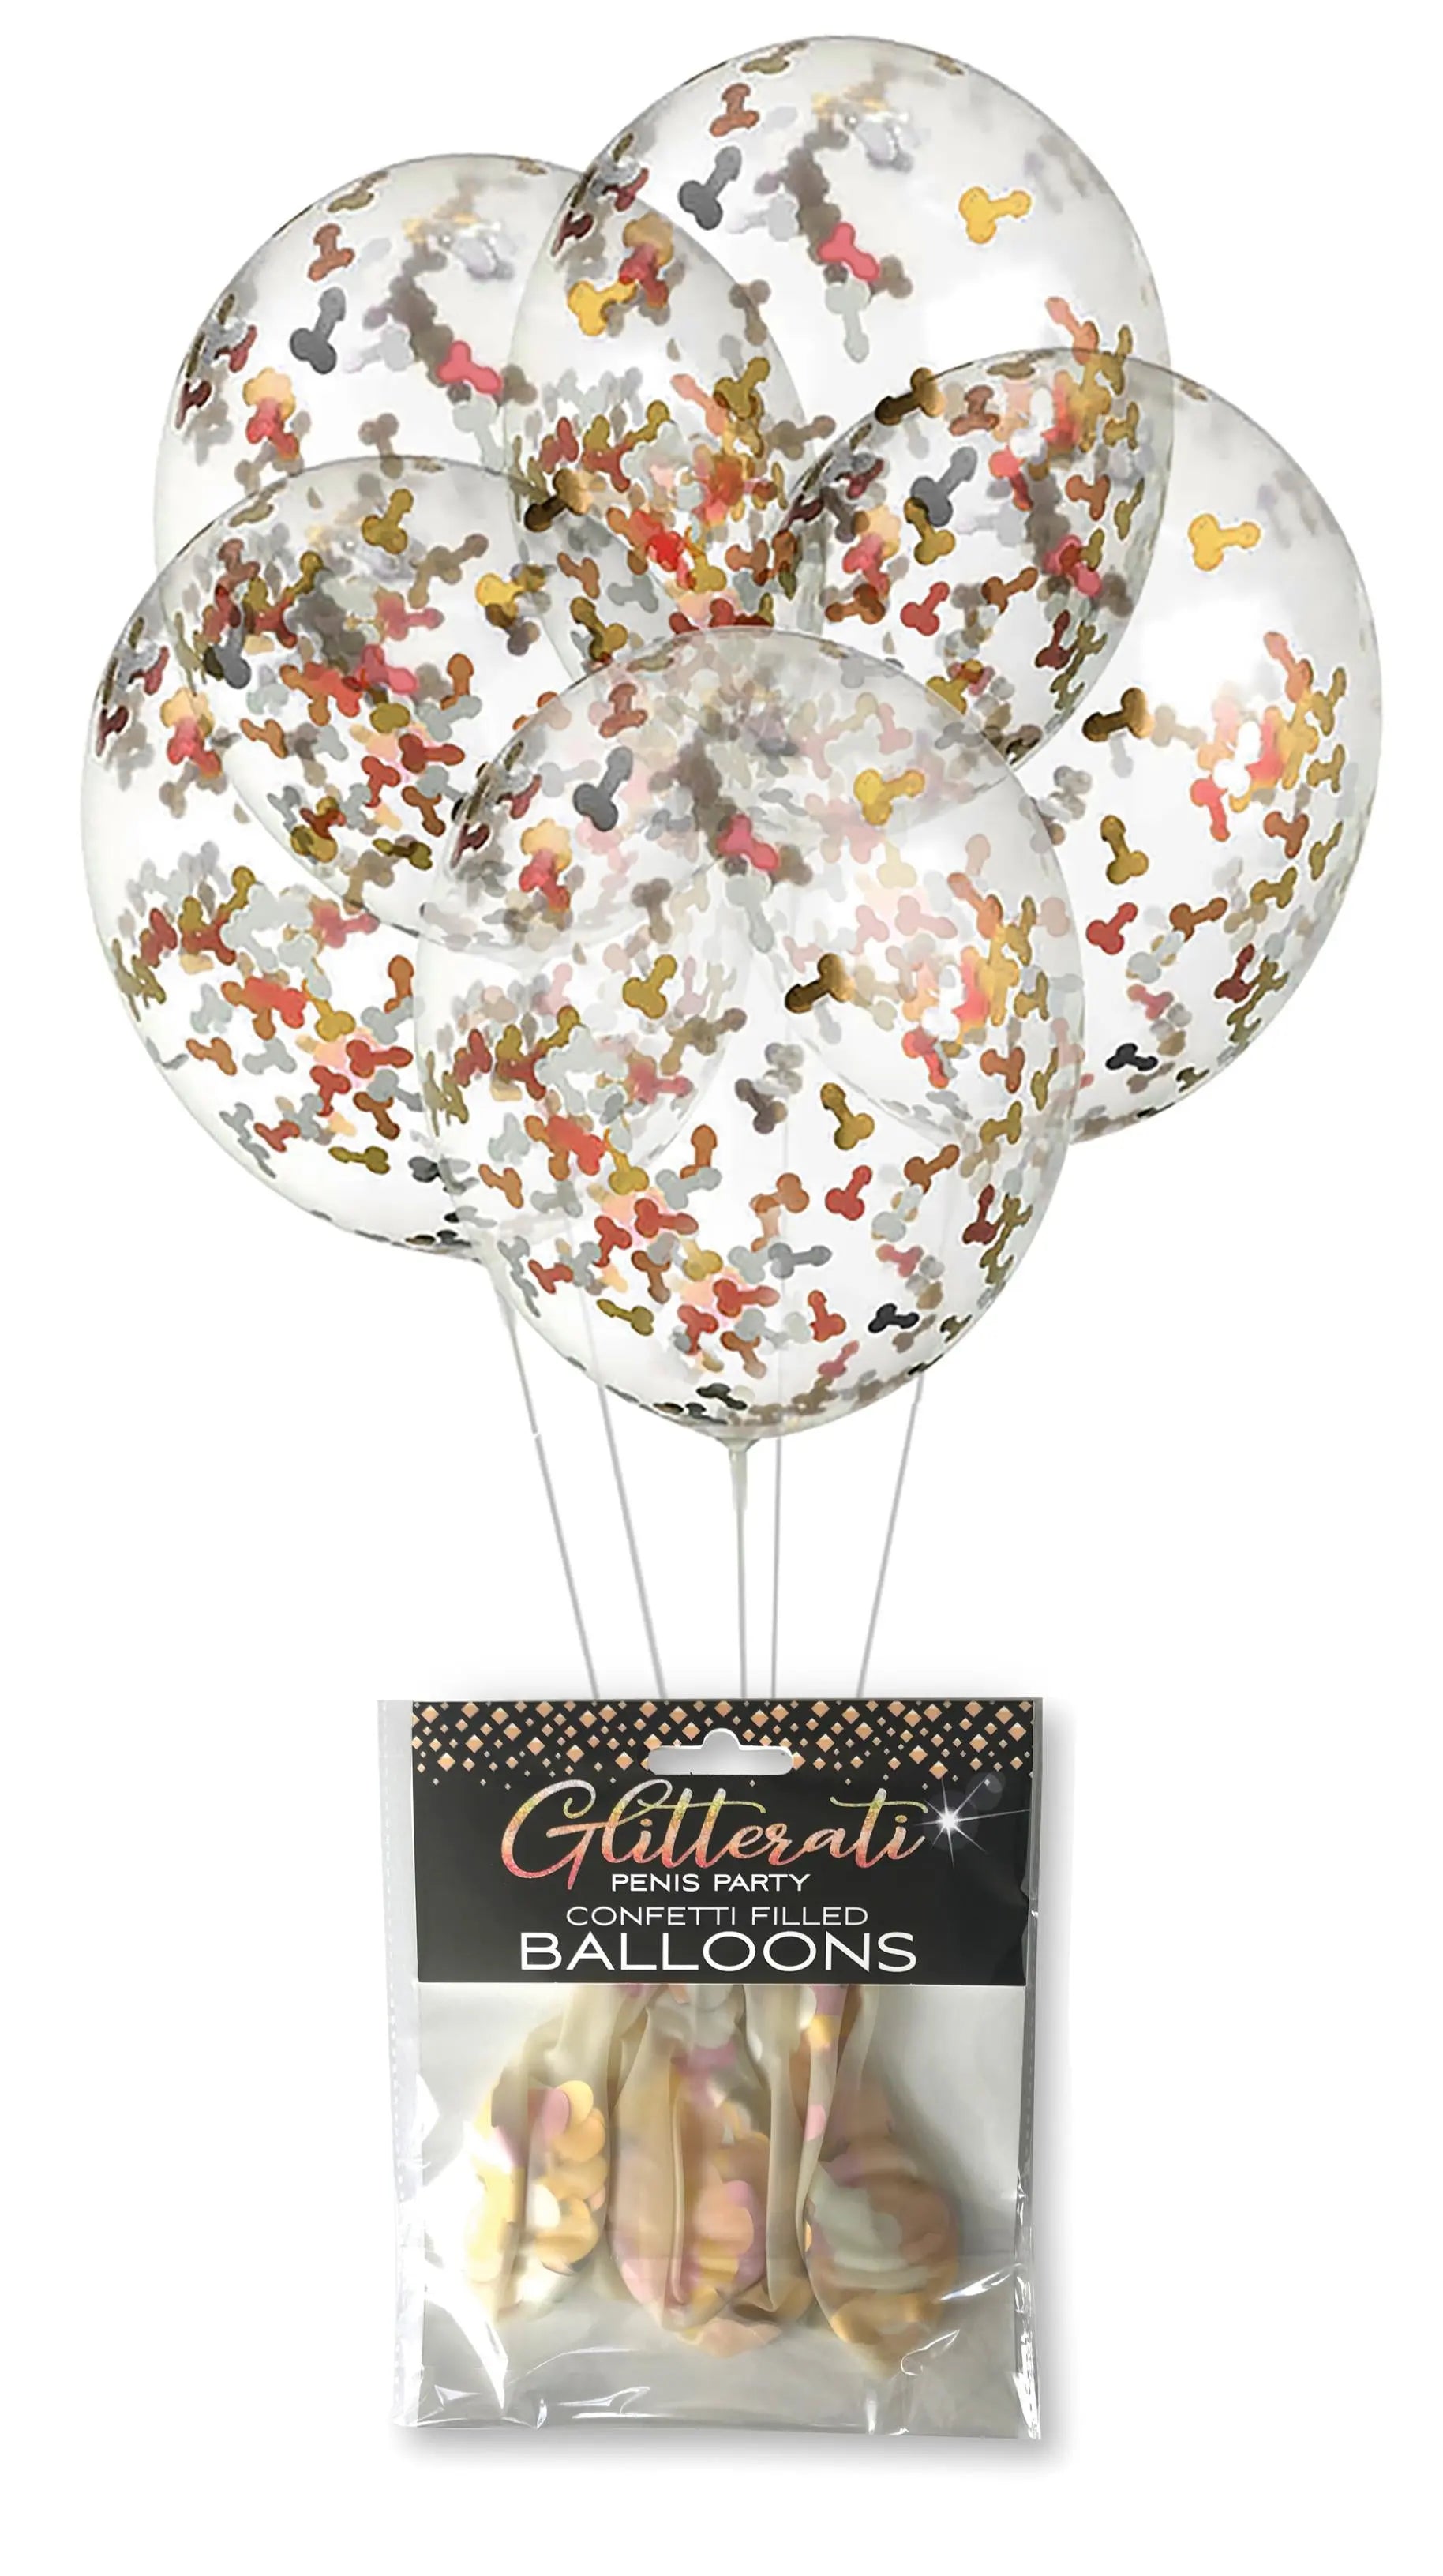 Glitterati Penis Party Confetti Balloon Little Genie